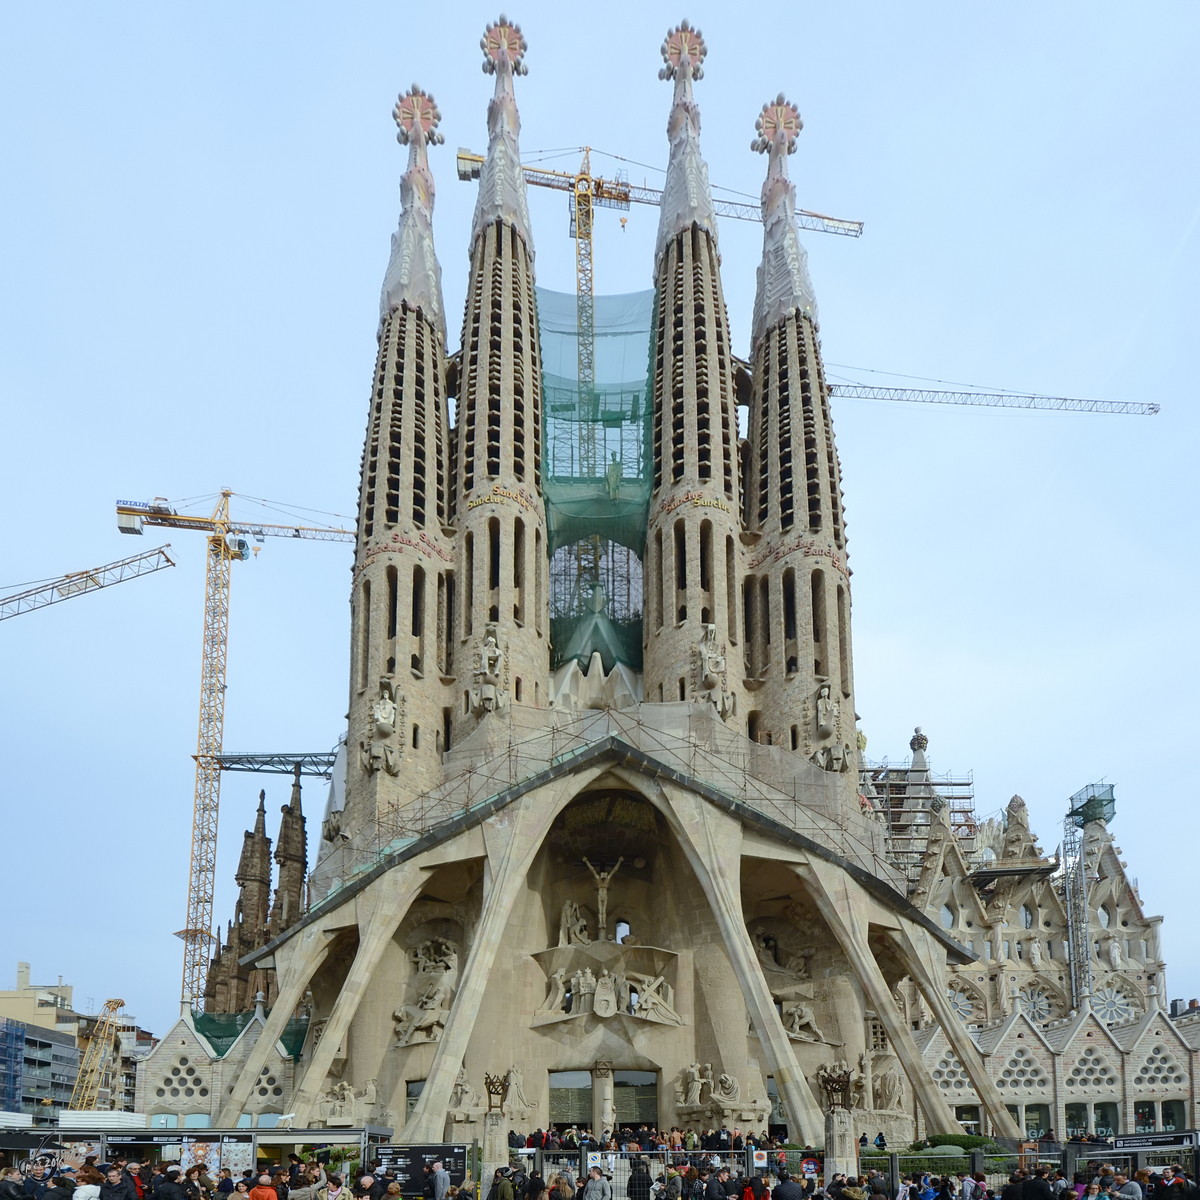 Die Sagrada Famlia ist das Wahrzeichen von Barcelona. Hier zu sehen ist die Passionsfassade der nach aktueller Planung 2026 zum 100. Todestag von Gaud fertiggestellten rmisch-katholische Basilika. (Dezember 2011)